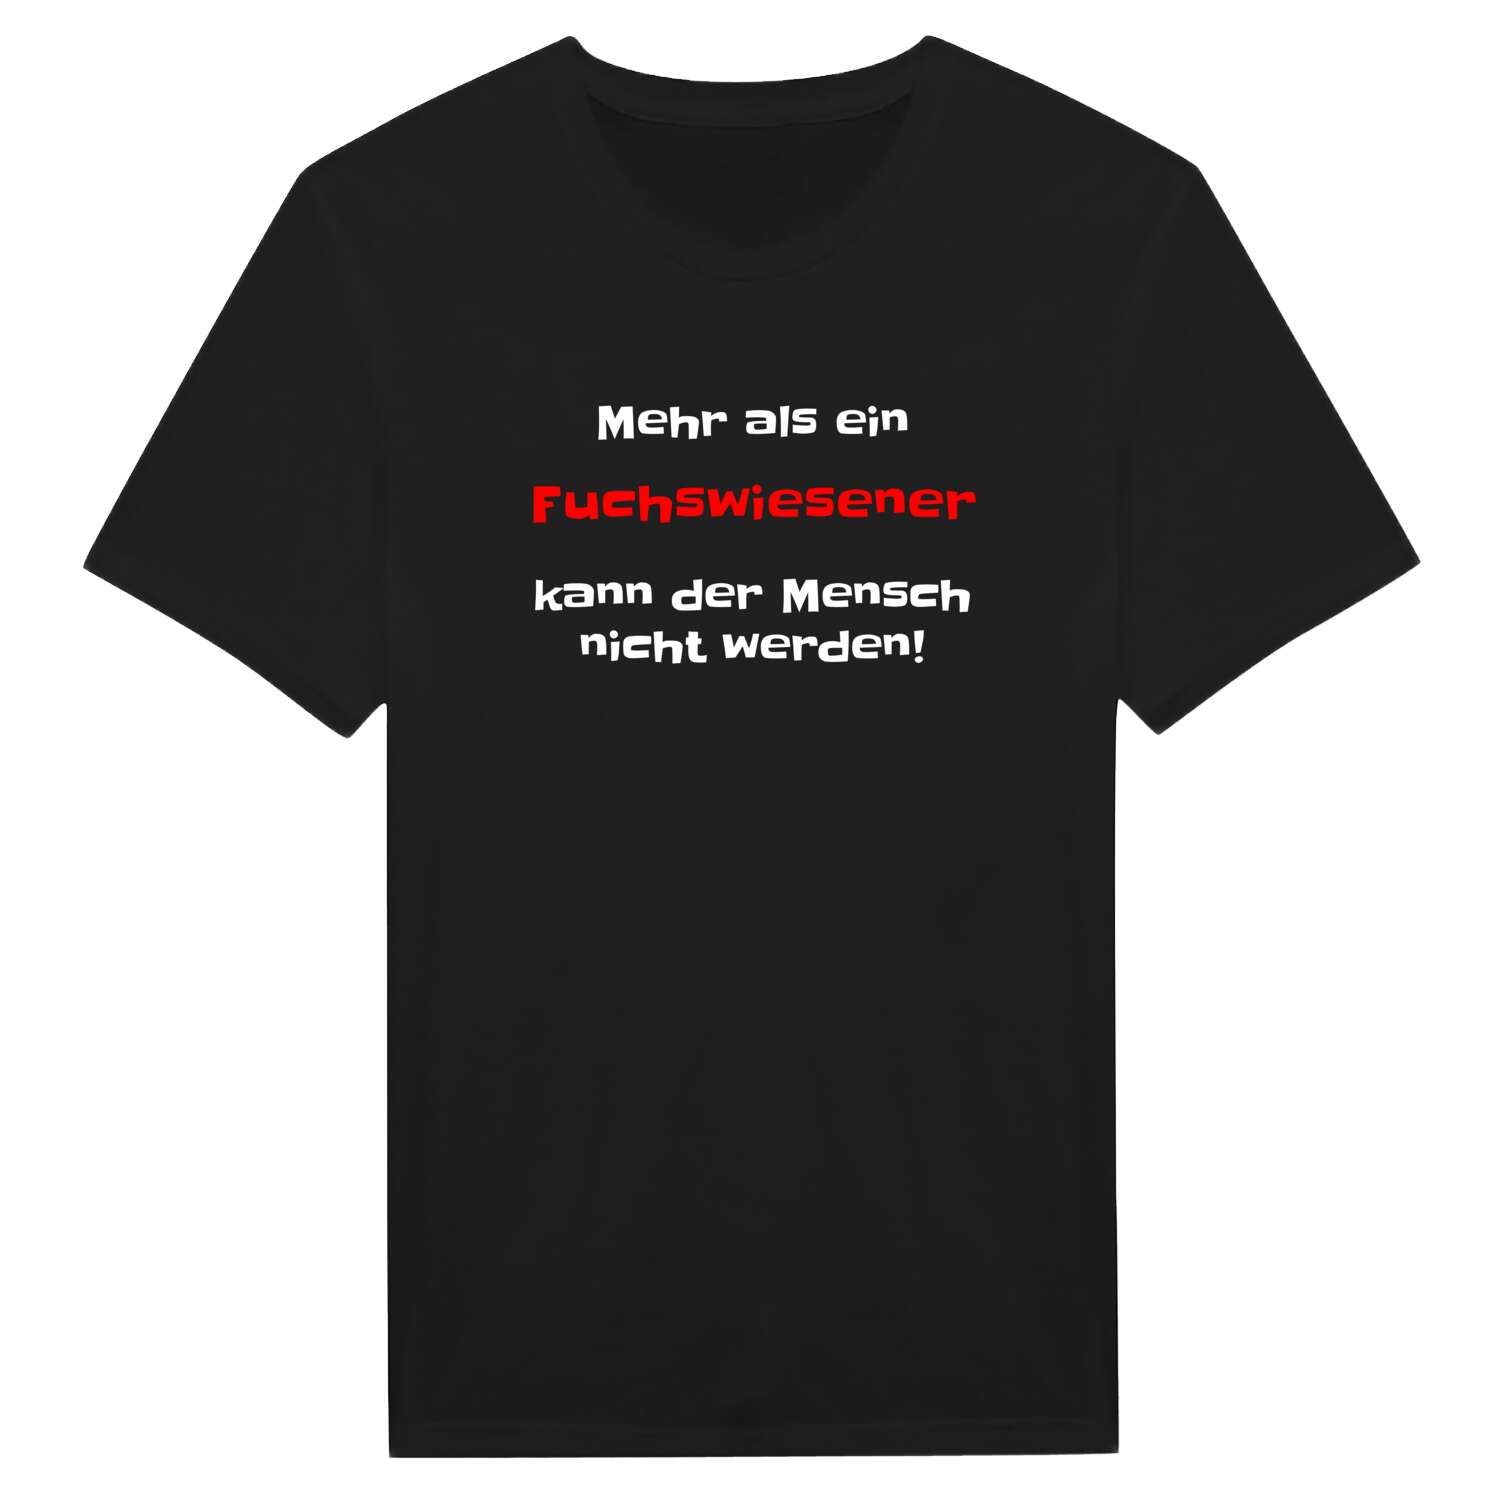 Fuchswiese T-Shirt »Mehr als ein«